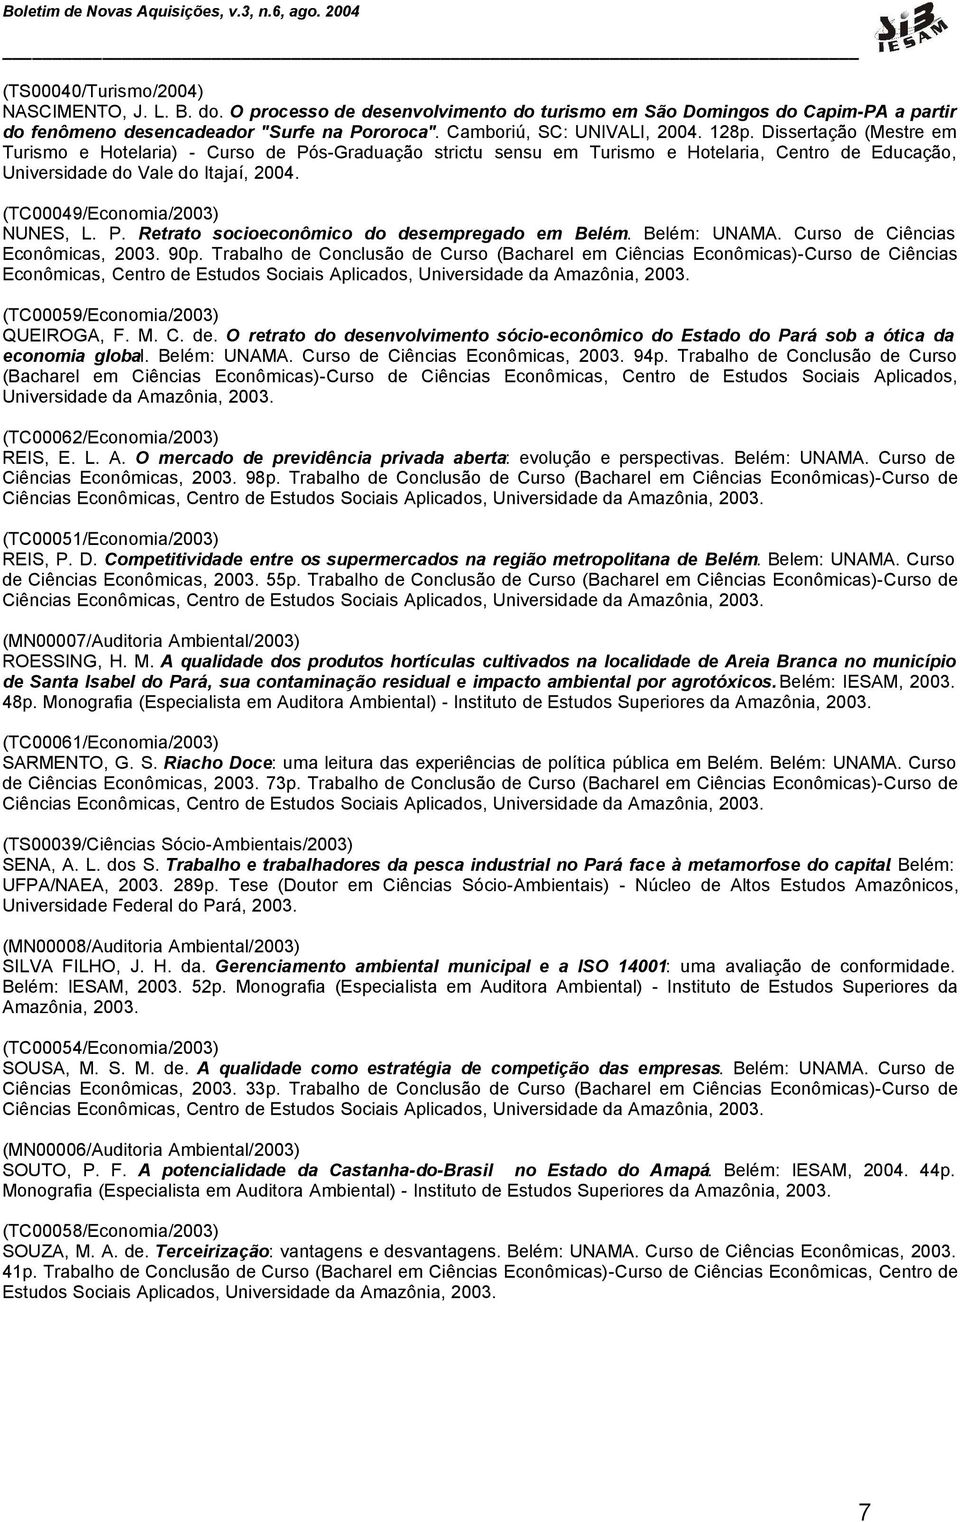 (TC00049/Economia/2003) NUNES, L. P. Retrato socioeconômico do desempregado em Belém. Belém: UNAMA. Curso de Ciências Econômicas, 2003. 90p.